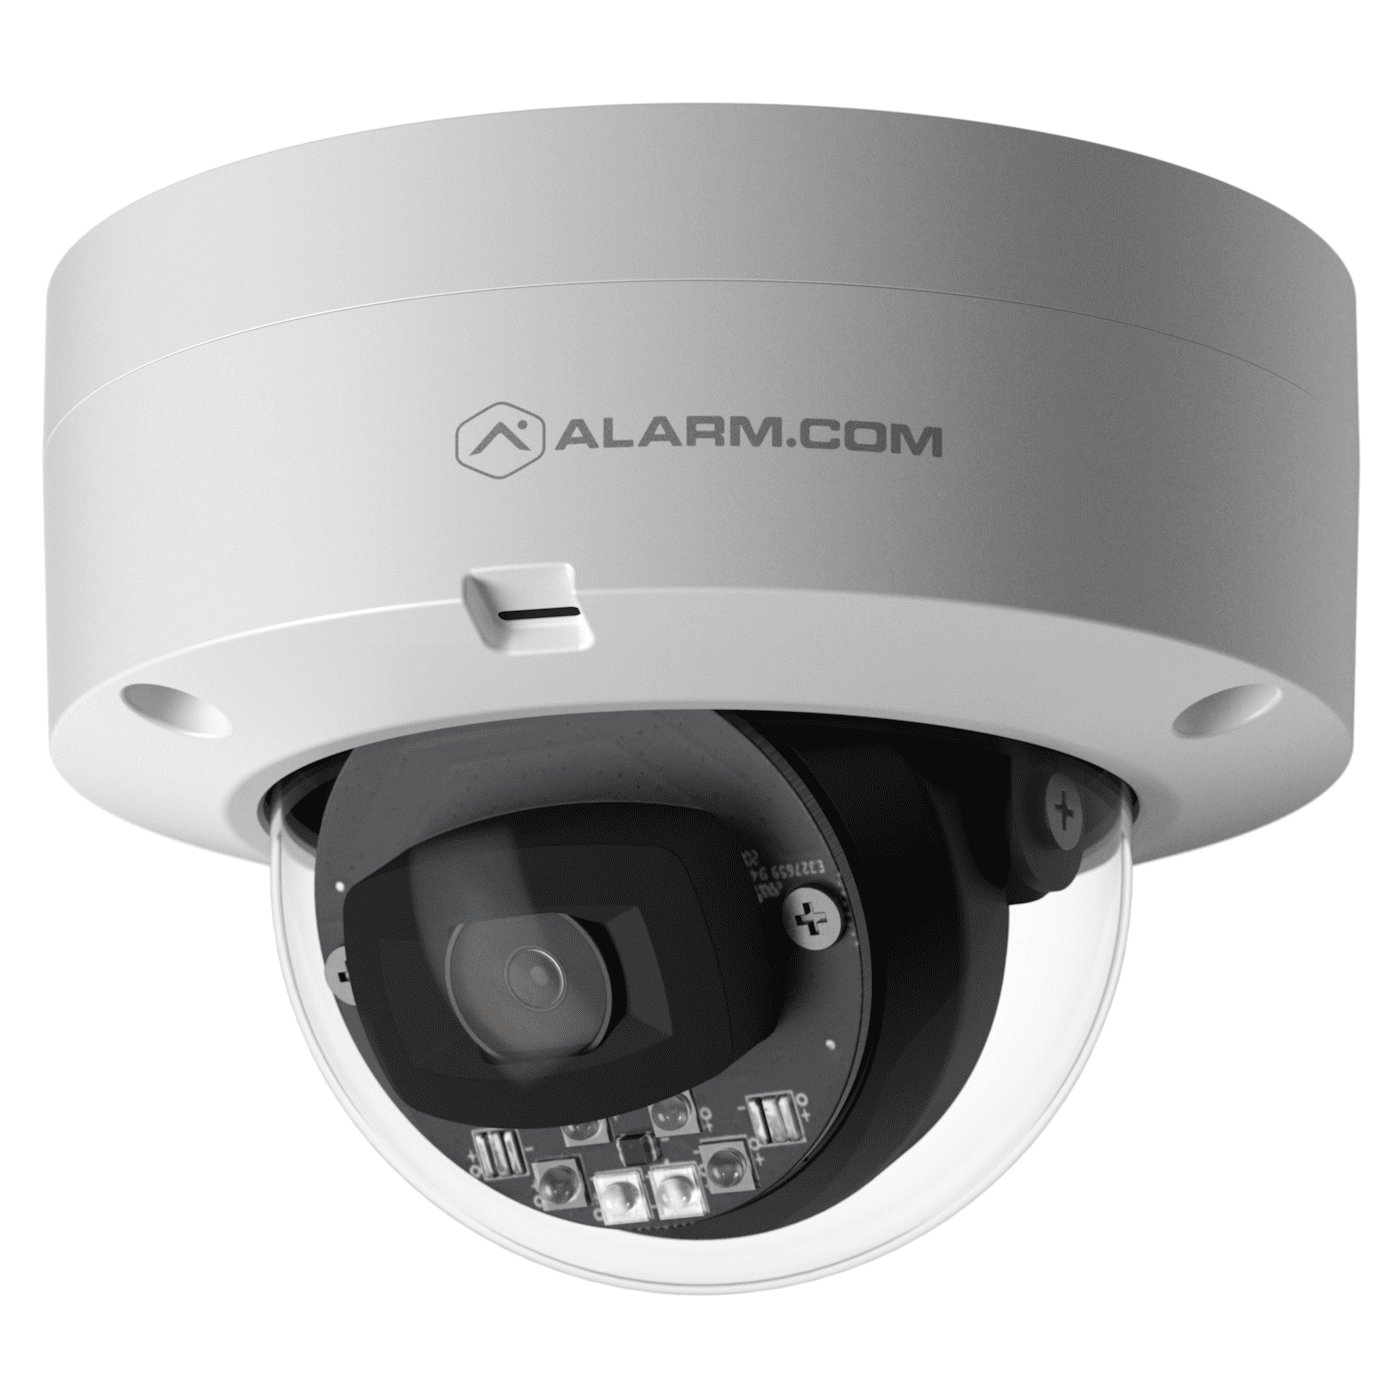 Alarm.com Indoor/Outdoor Dome Camera